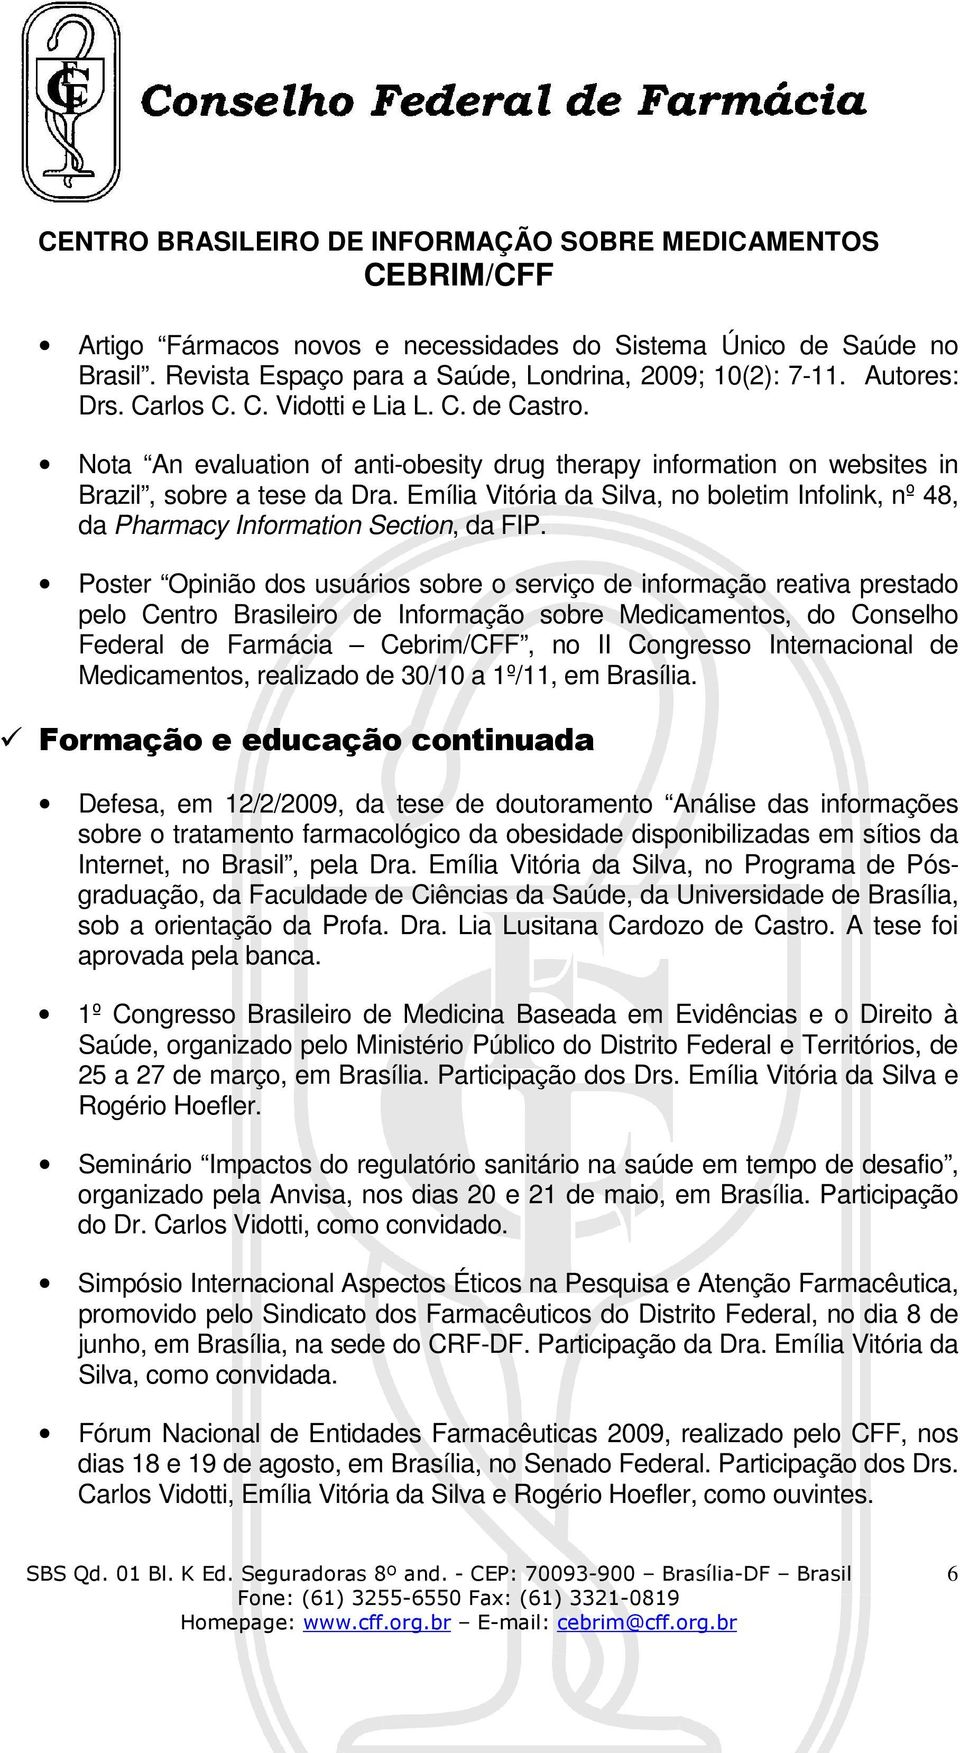 Poster Opinião dos usuários sobre o serviço de informação reativa prestado pelo Centro Brasileiro de Informação sobre Medicamentos, do Conselho Federal de Farmácia Cebrim/CFF, no II Congresso